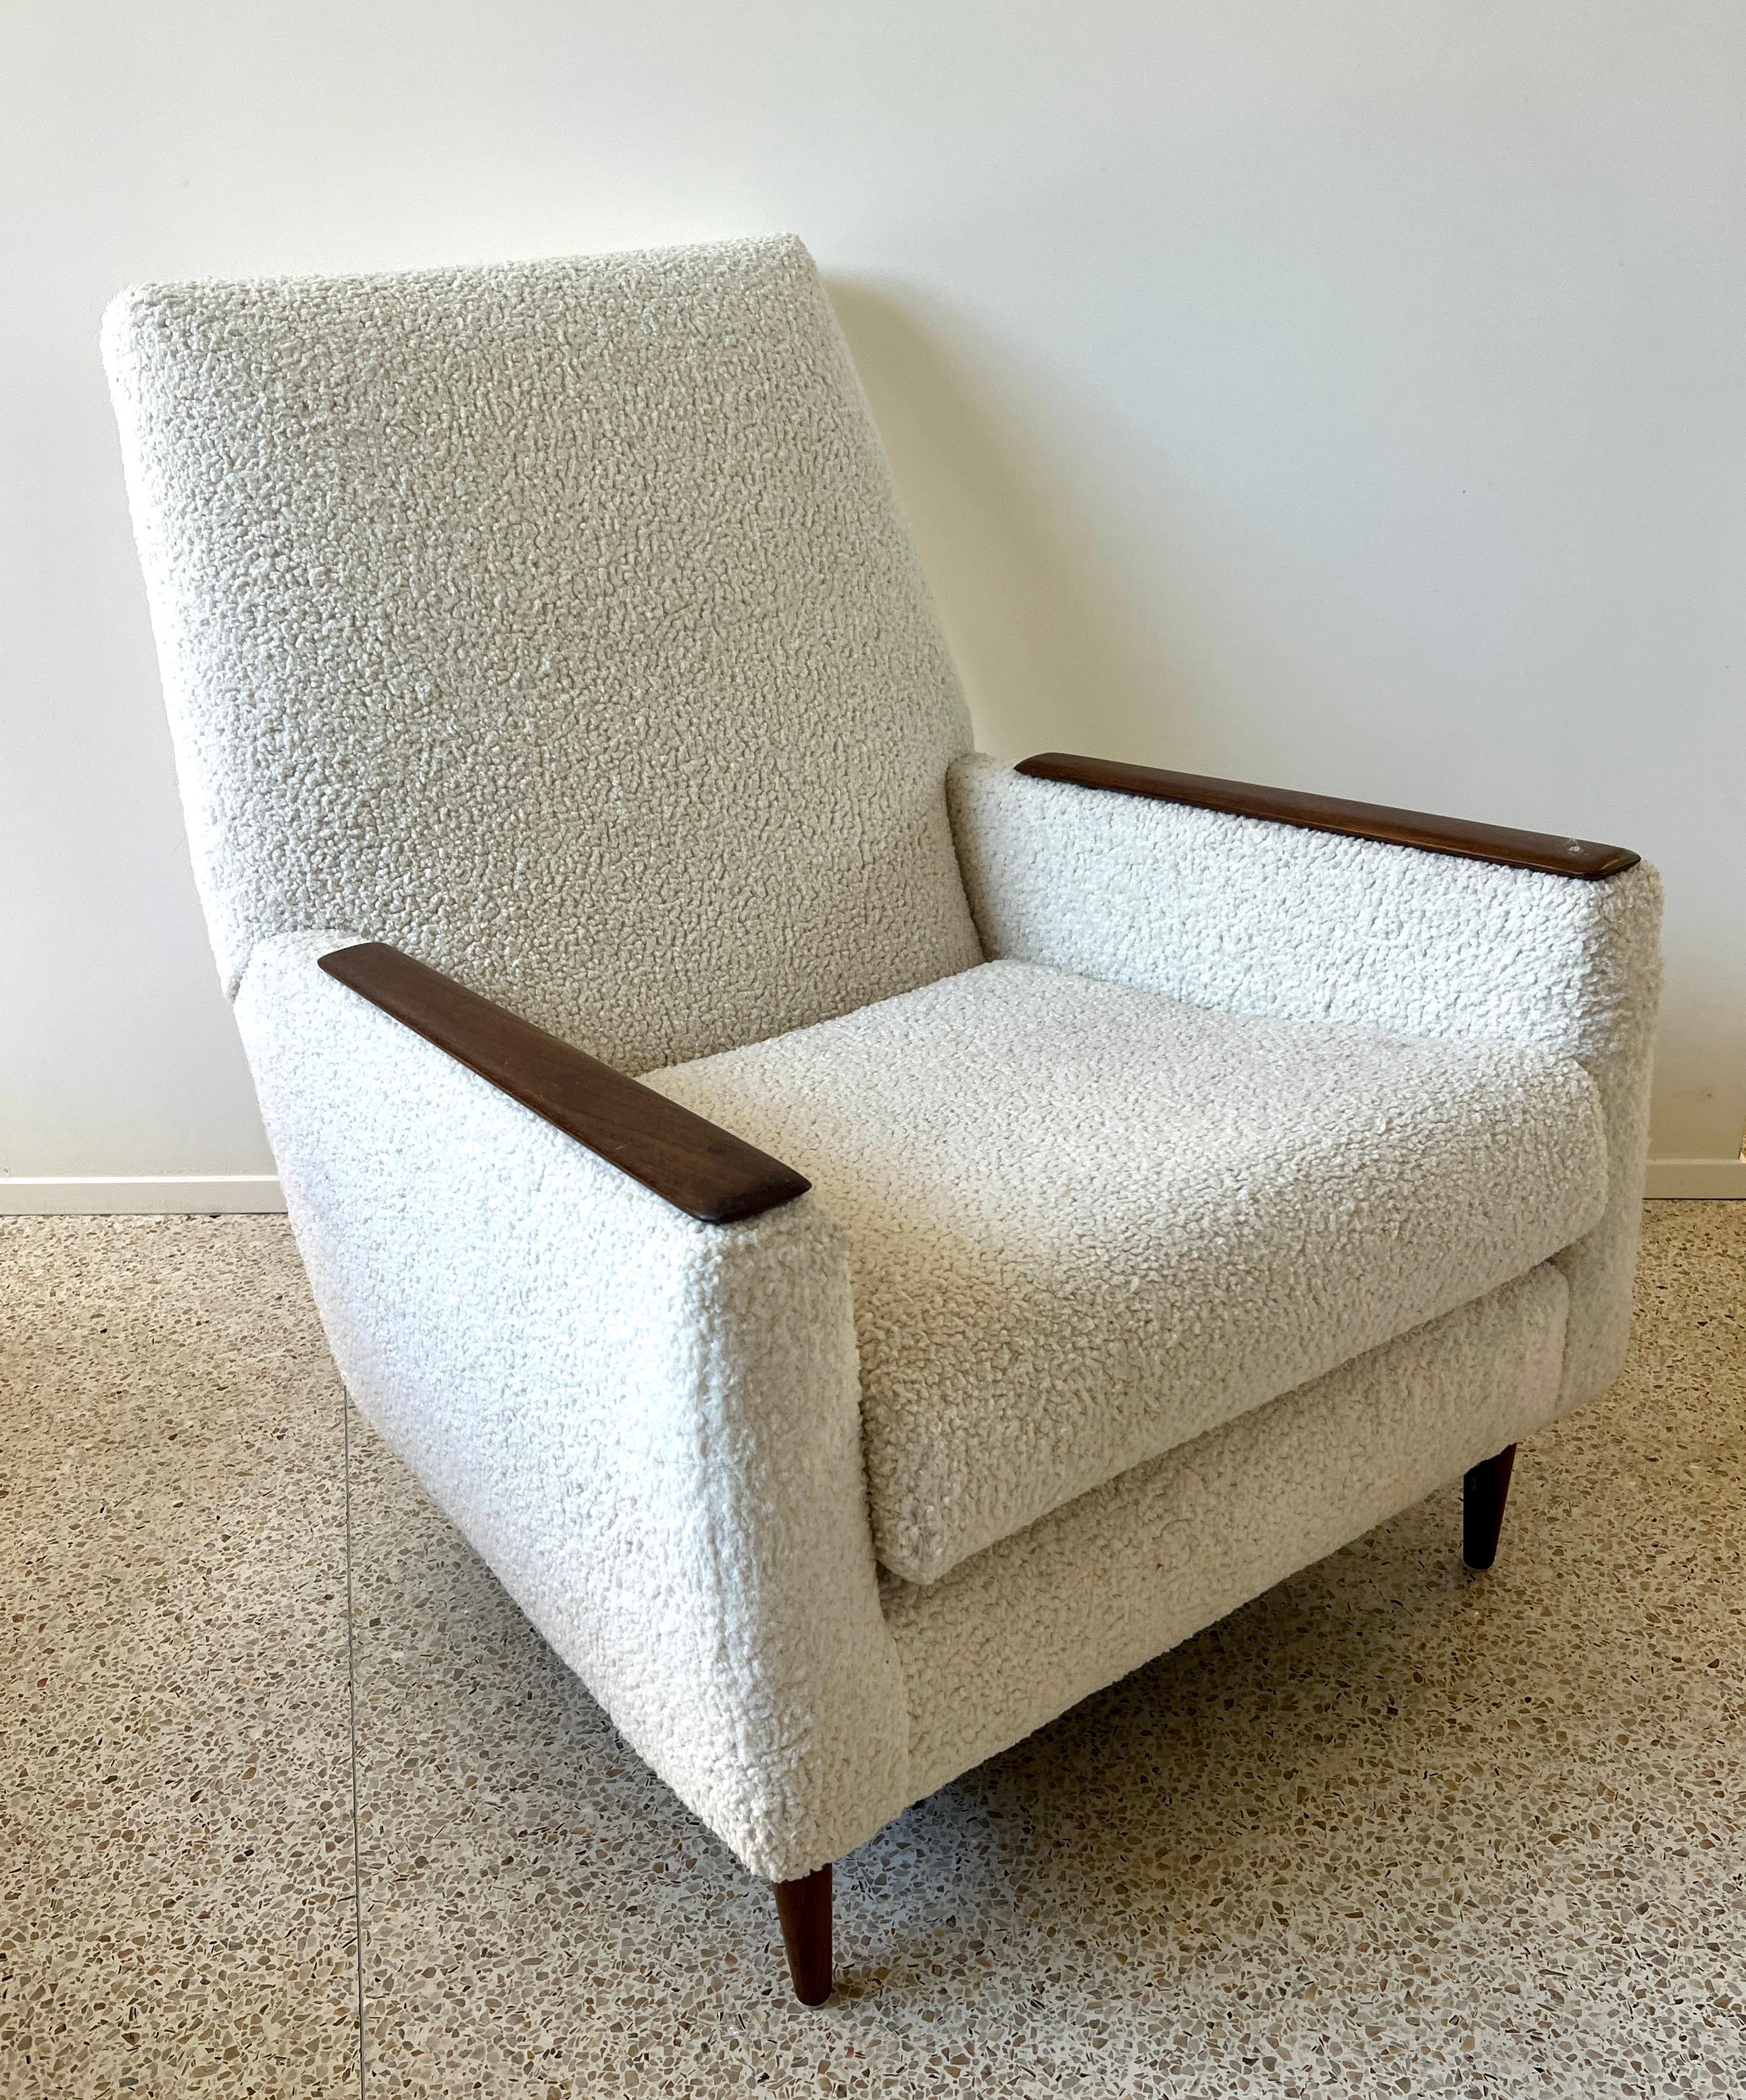 Une merveilleuse et extrêmement confortable chaise longue danoise moderne du milieu du siècle.

Les lignes modernes et le tissu permettent à ce look emblématique de rester d'actualité dans les maisons et les espaces du 21e siècle.   Un complément à